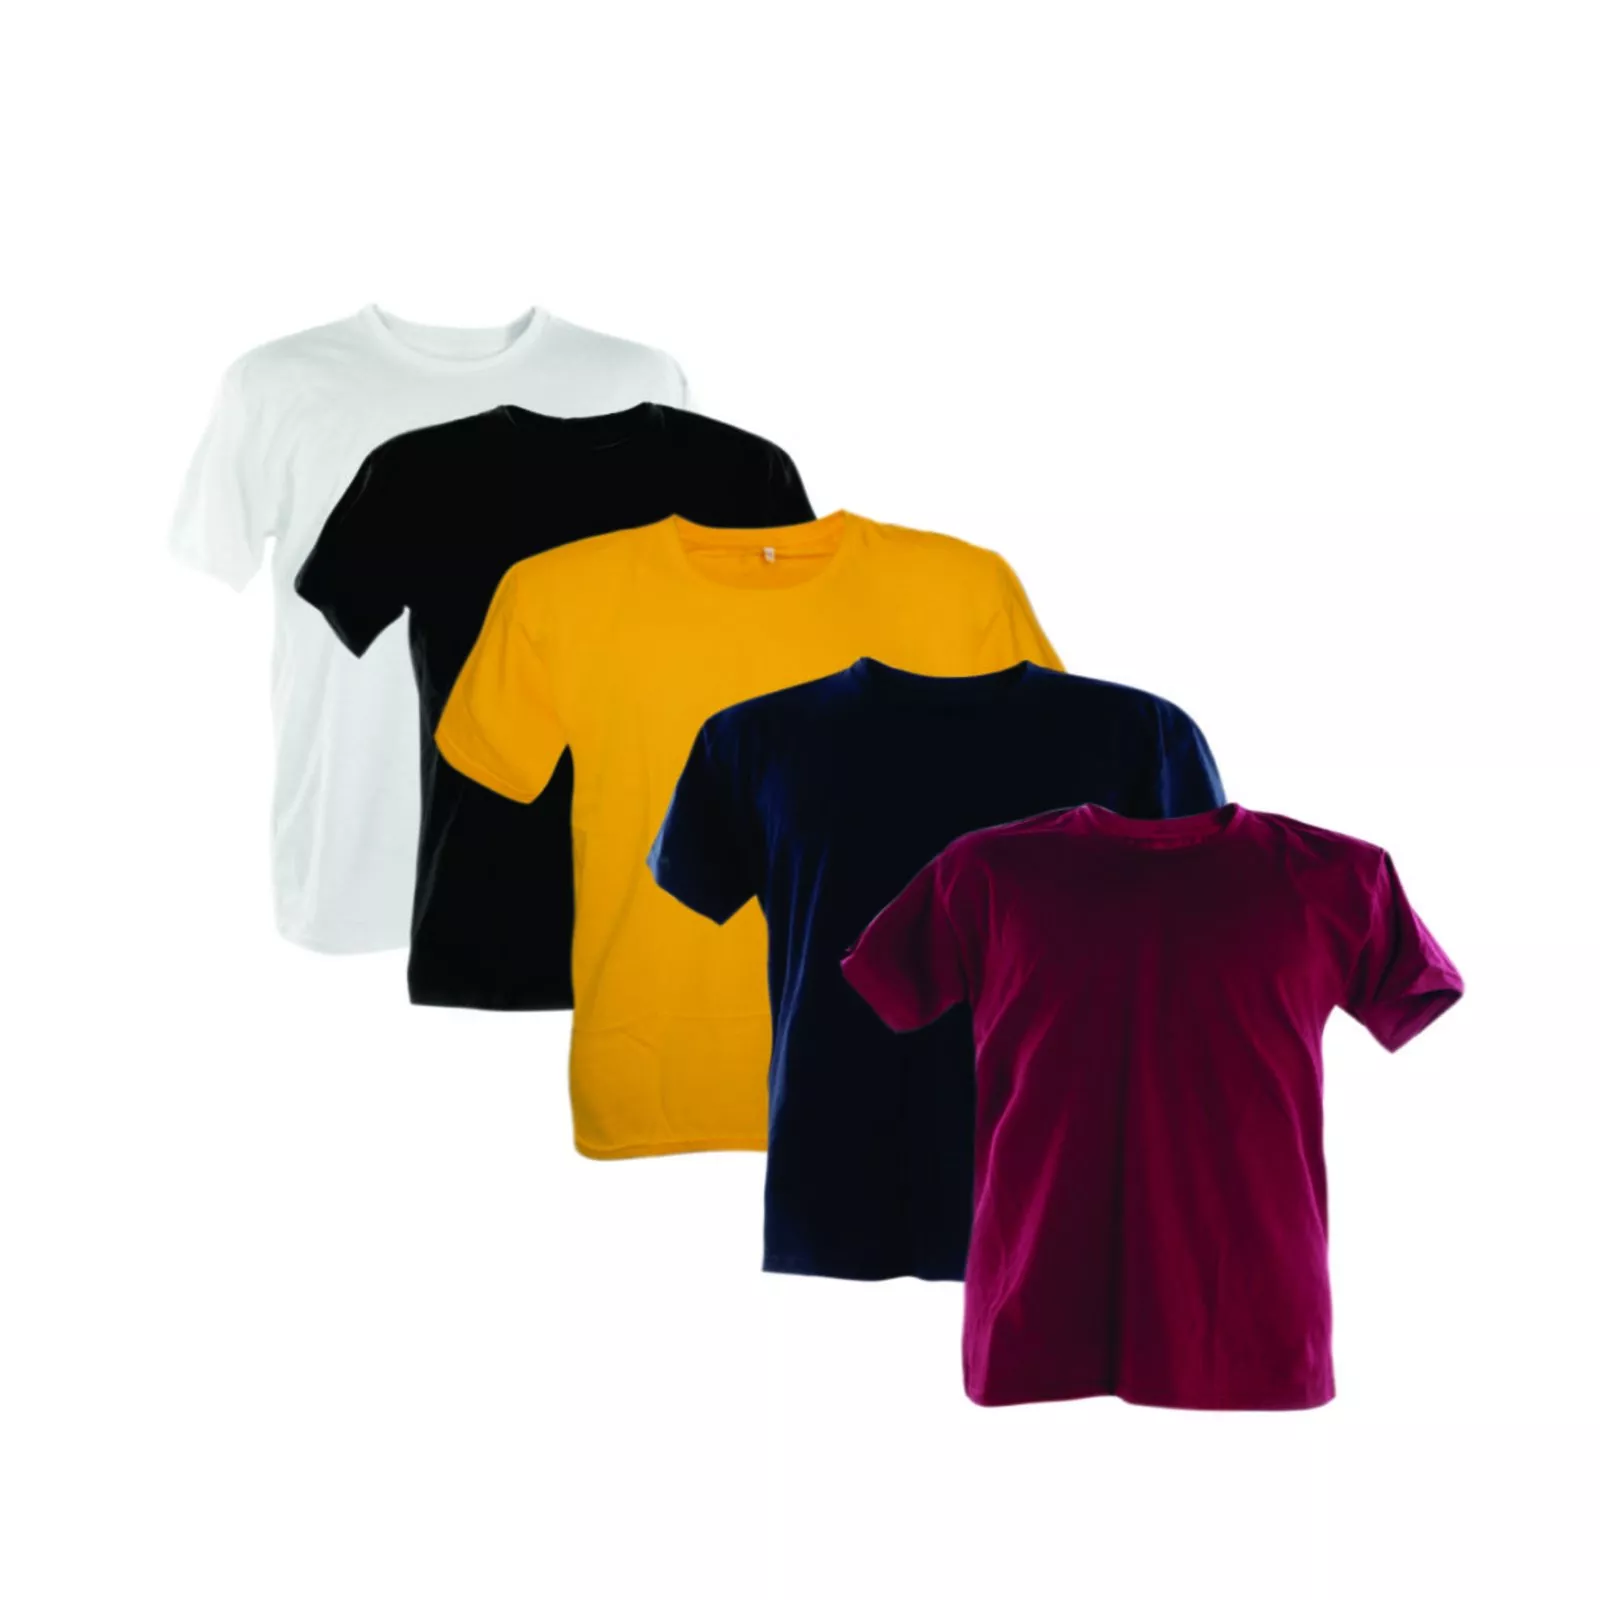 Kit 5 Camisetas 100% Algodão Vinho, Marinho, Ouro, Preto, Branco